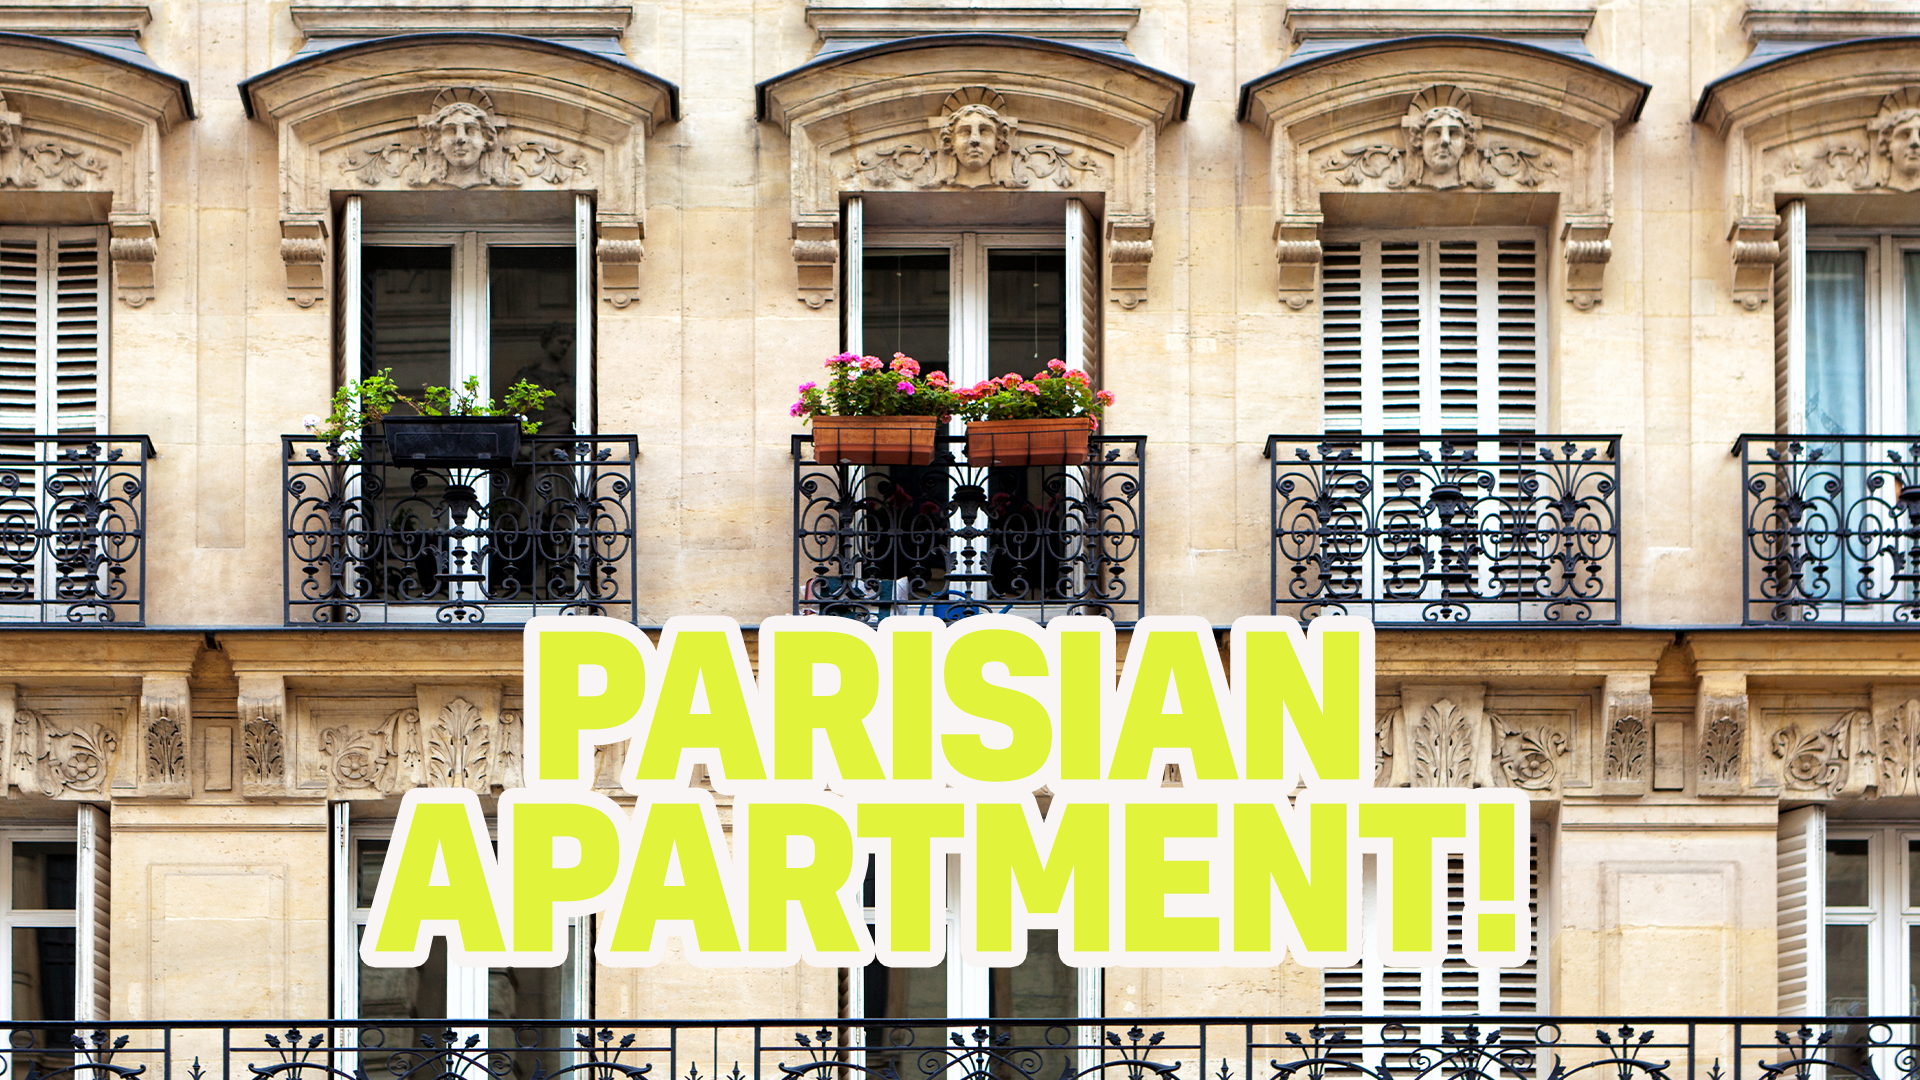 Result: Parisian Apartment 